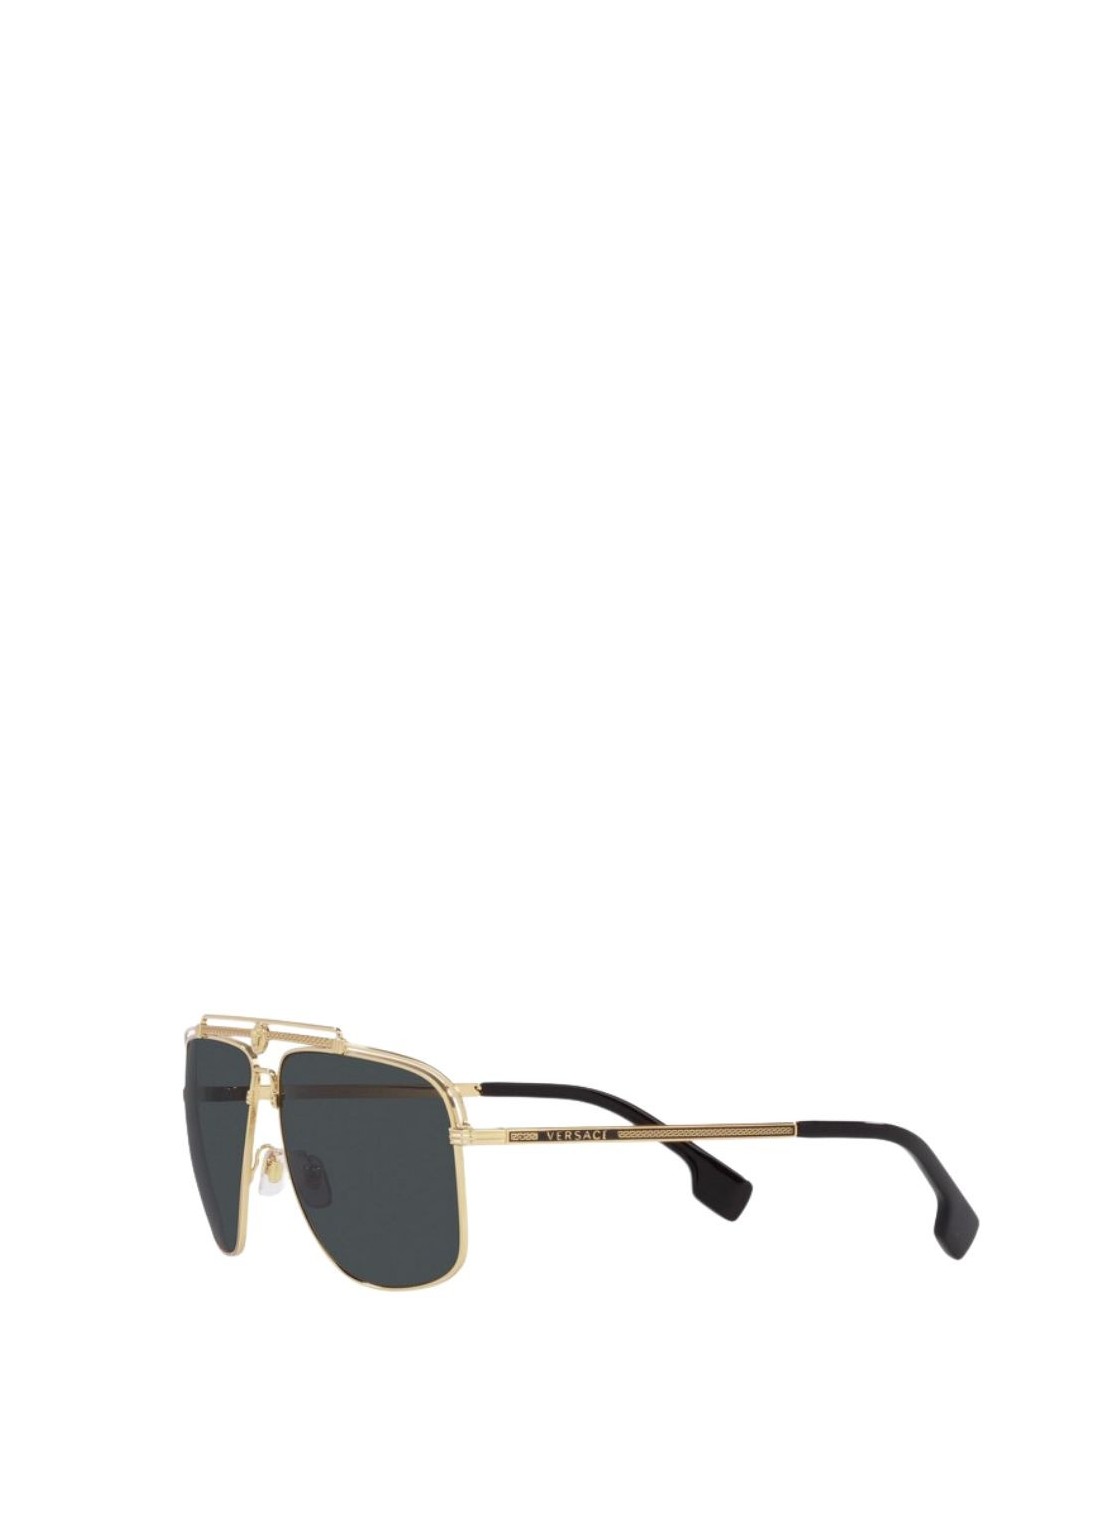 Gafas versace sunglasses woman 0ve2242 0ve2242 100287 talla transparente
 